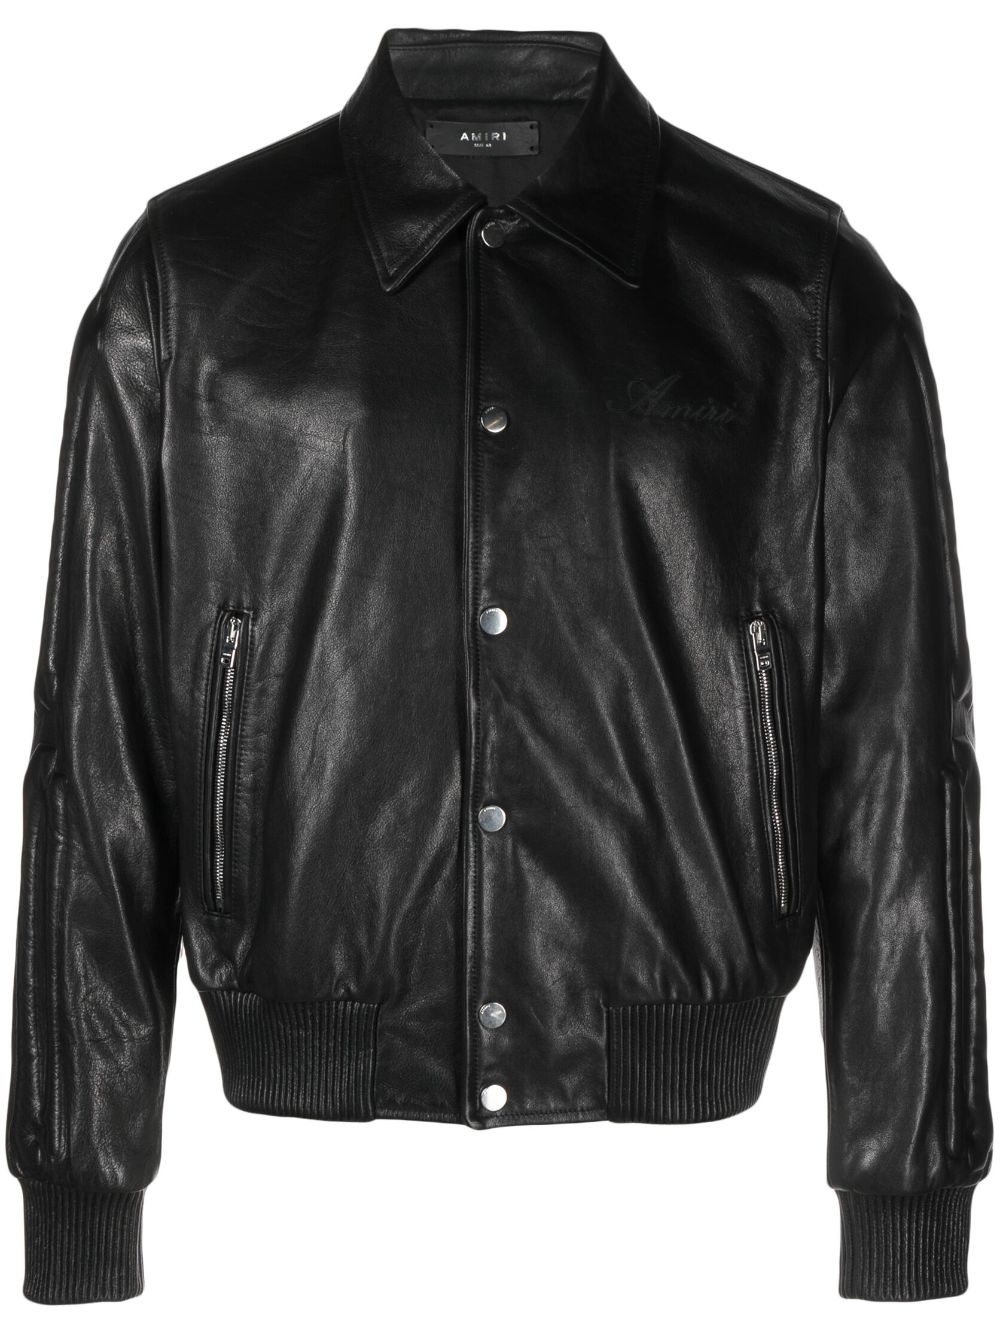 Bones embossed leather jacket - 1